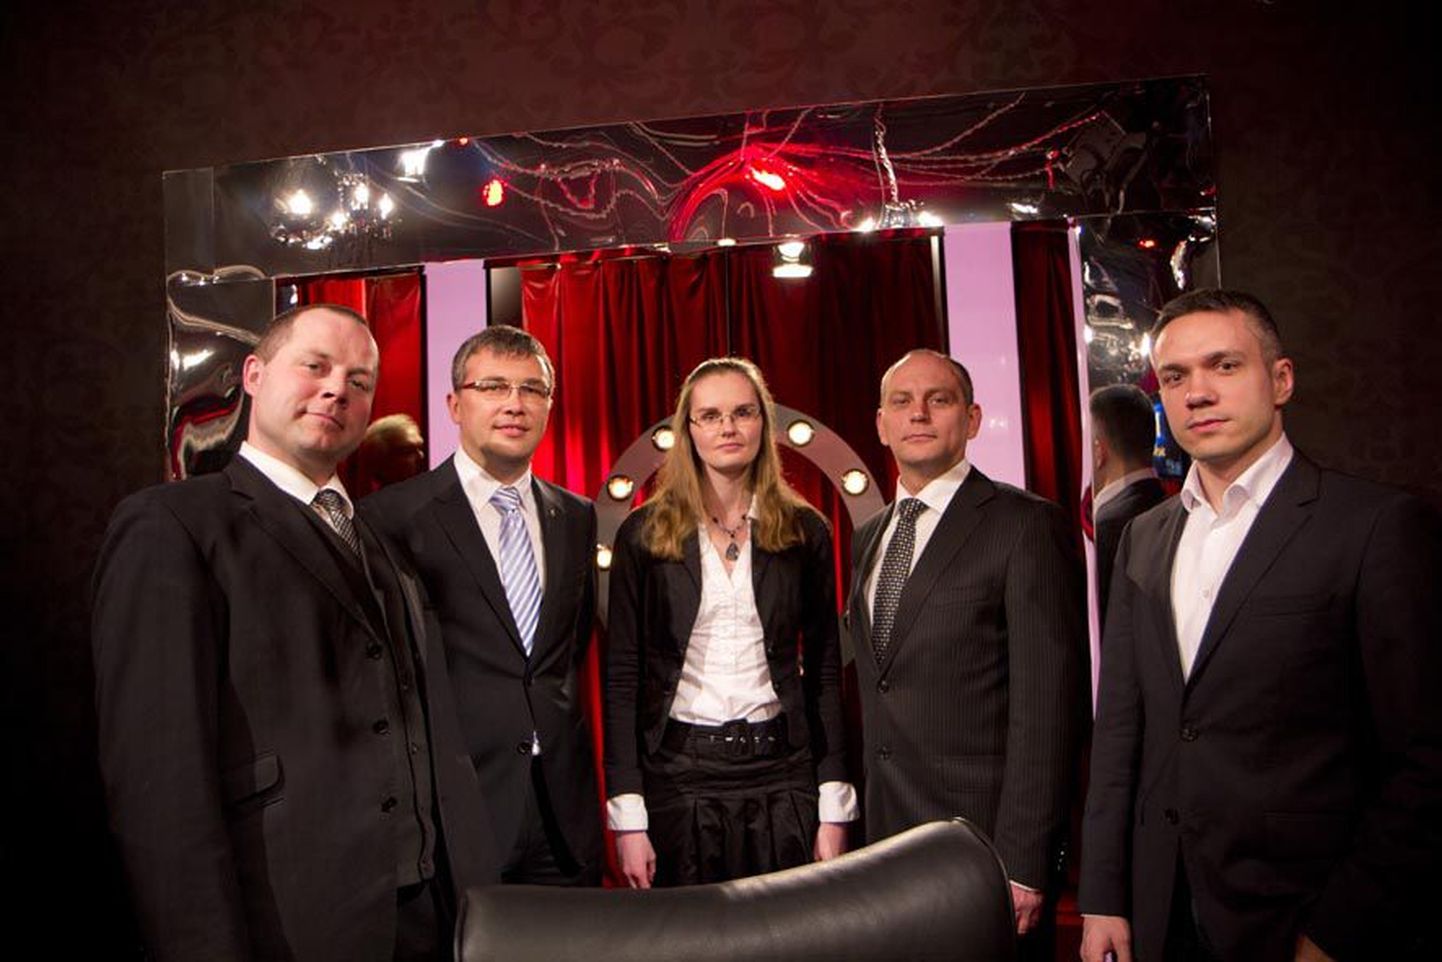 Homme hakkavad mälumängusaates televaatajate küsimustele vastuseid otsima Arlet Palmiste (vasakult), Urmas Glase, Maarit Nõmm, Alari Kirt ja Andrei Korobeinik.